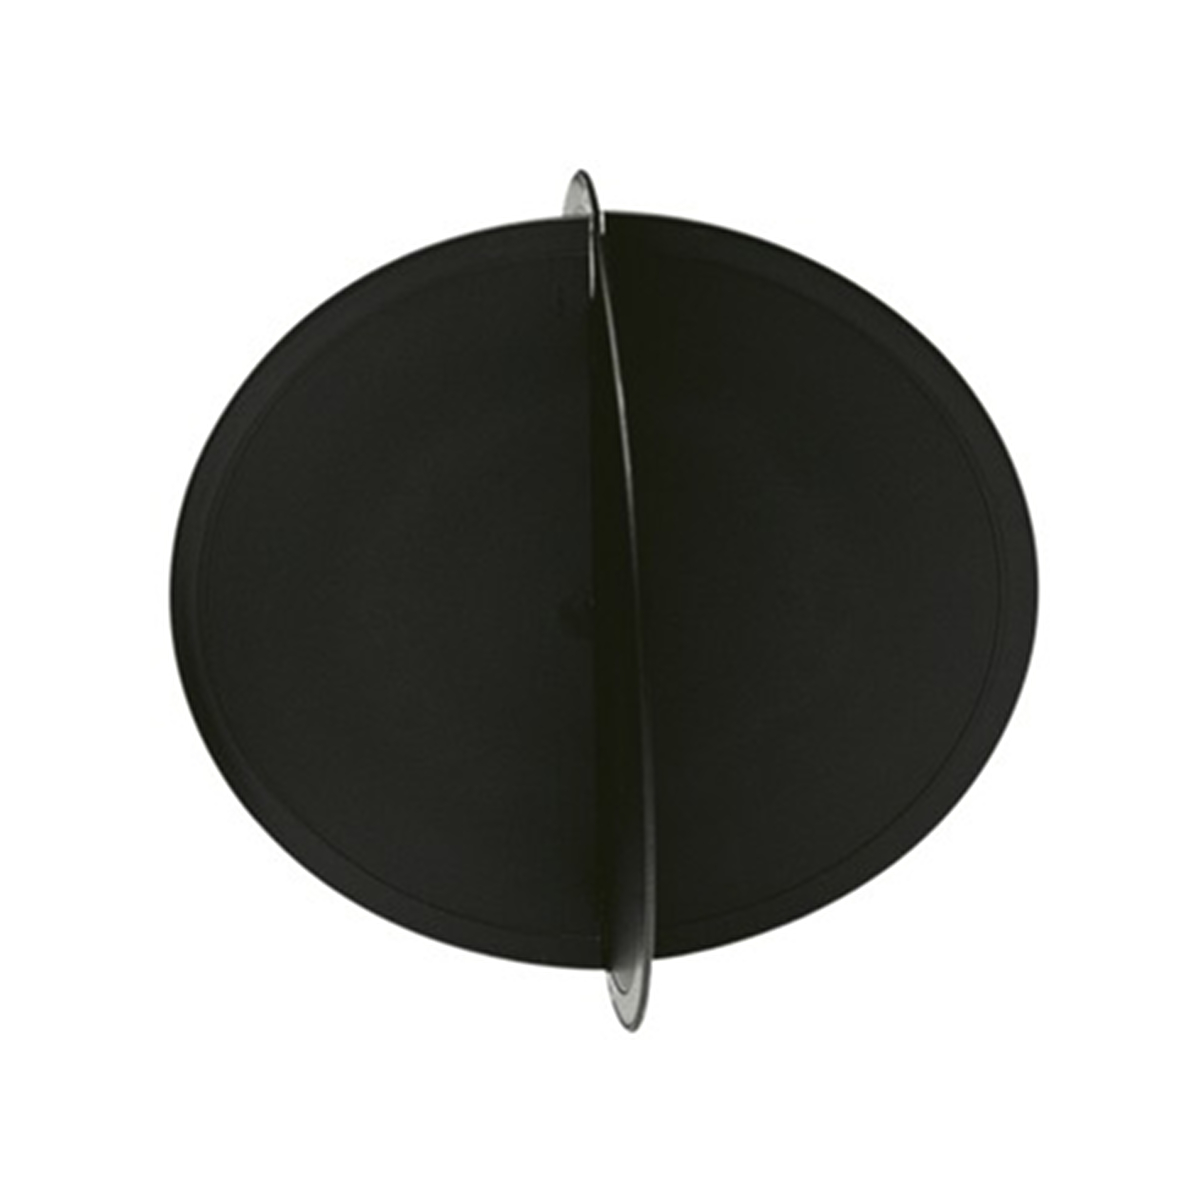 Plastimo ankerbol zwart 30 cm